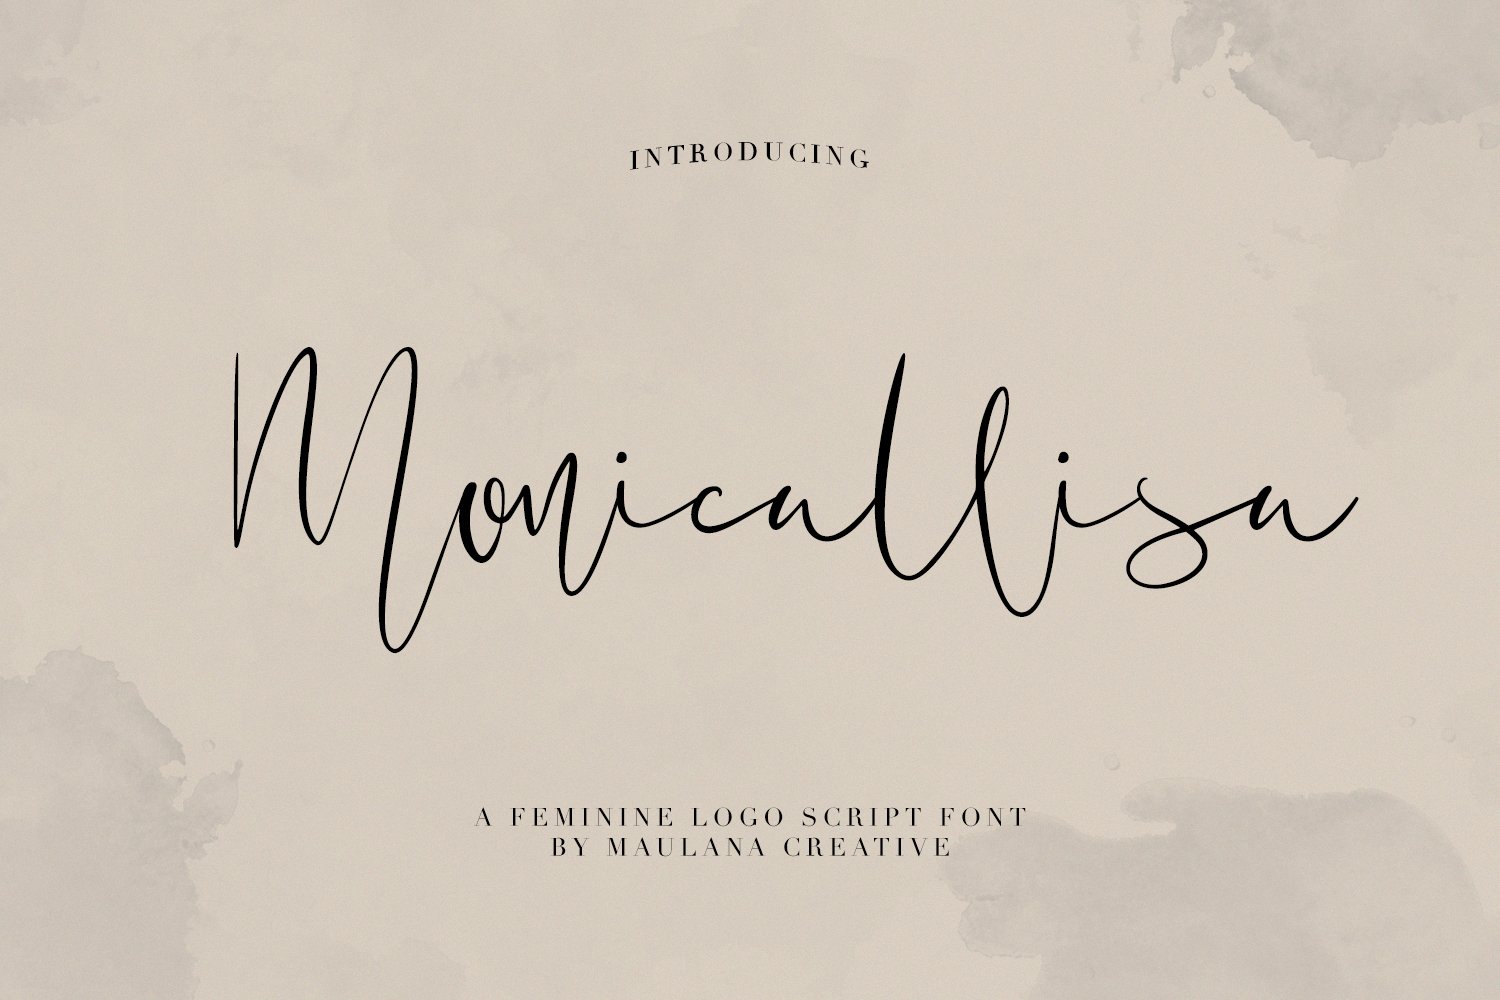 Monicallisa Feminine Logo Script cover image.